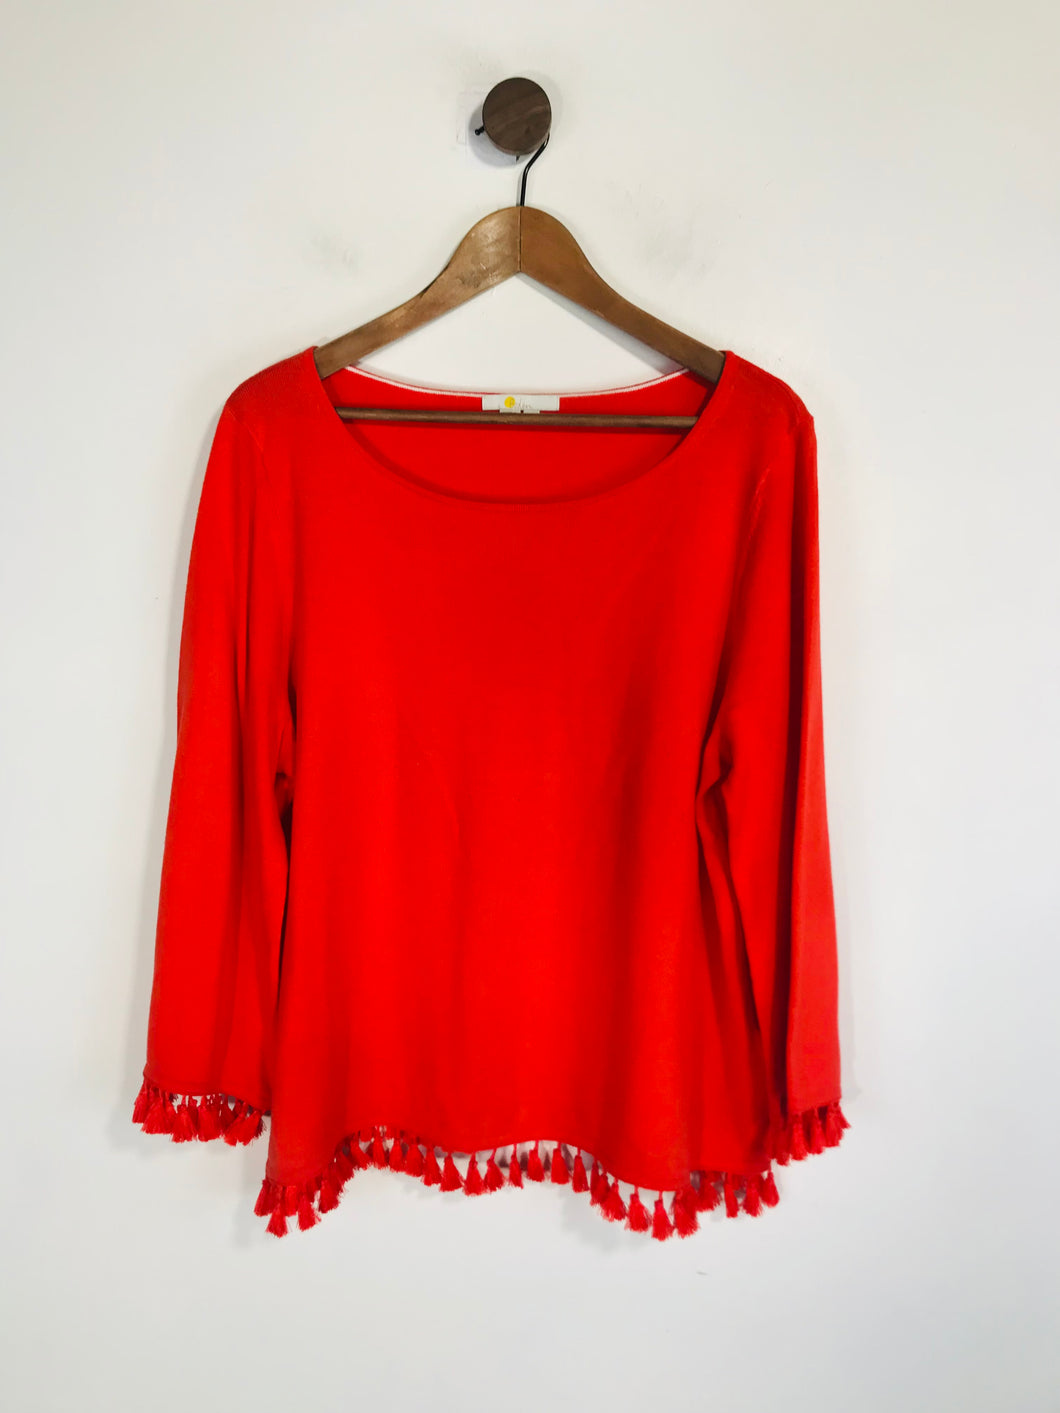 Boden Women's Knit Jumper | XL UK16 | Red